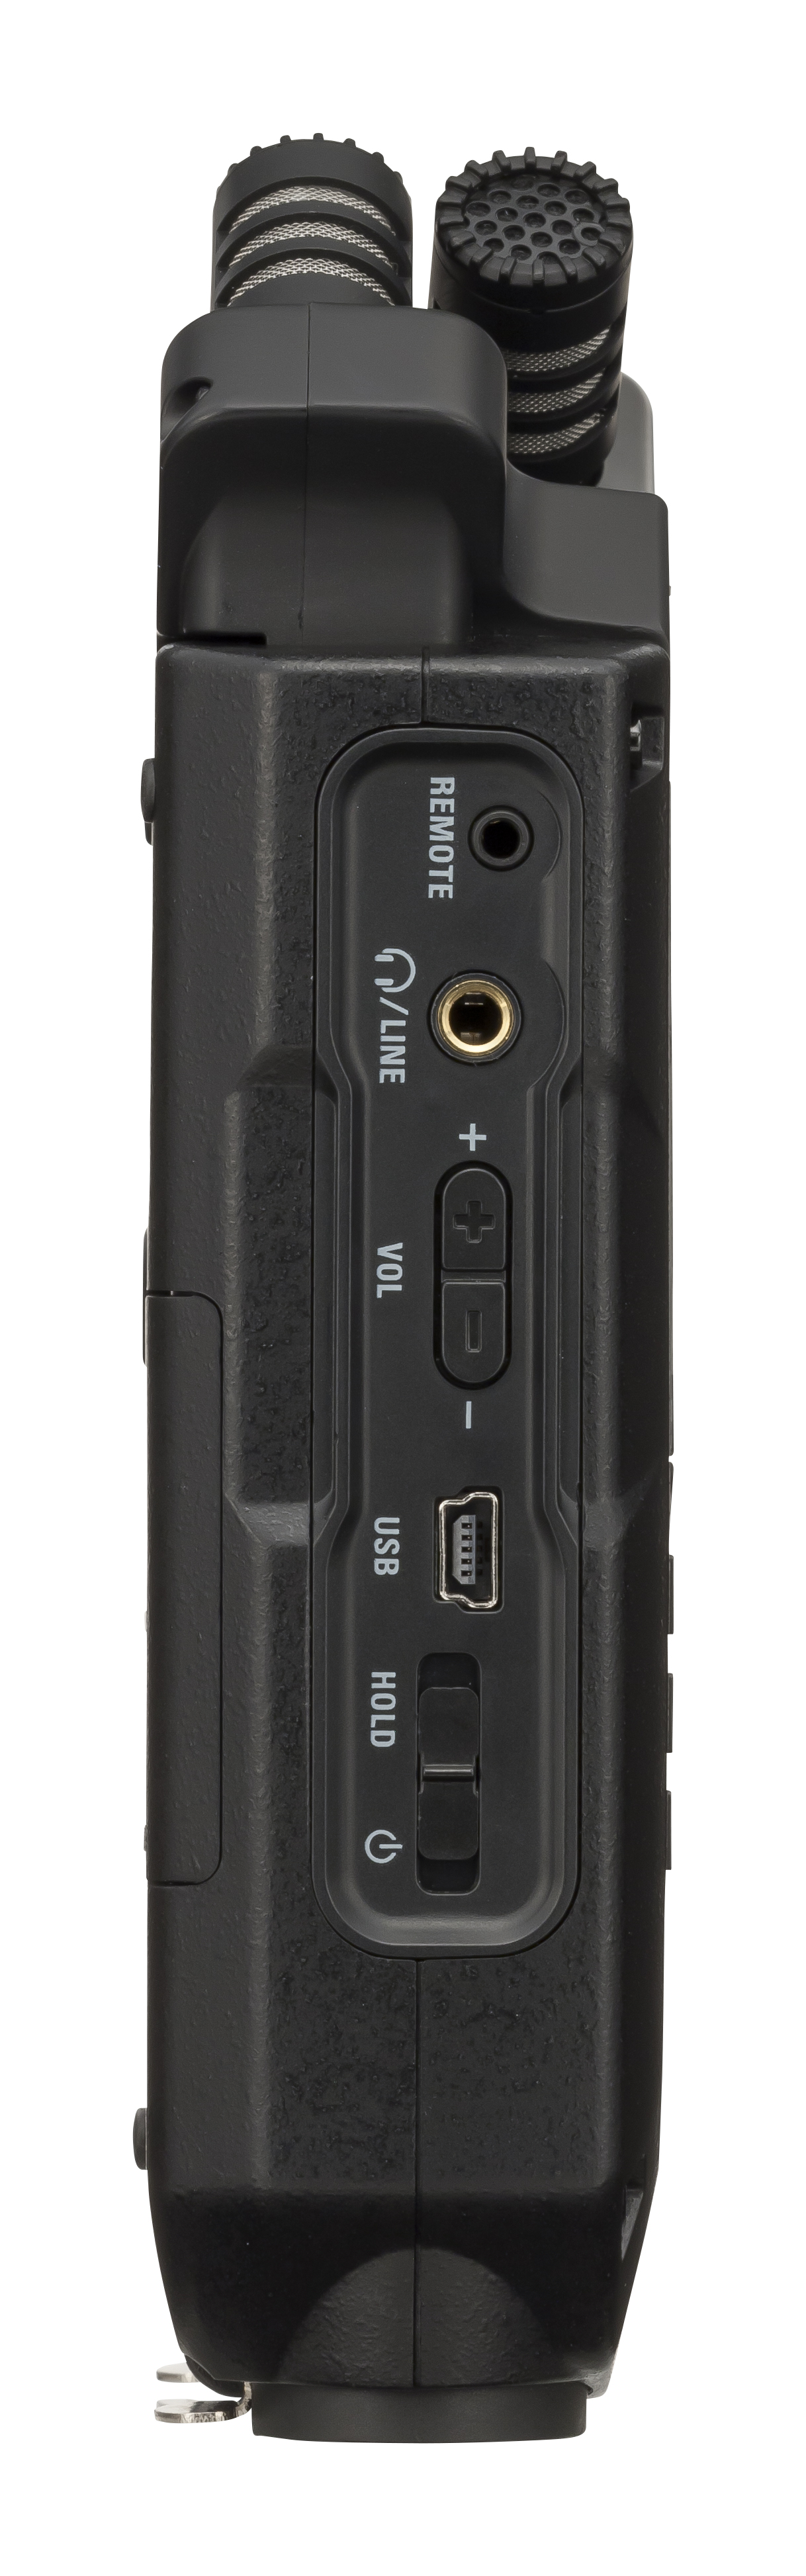 Zoom H4n Pro Black + Pack Accessoires - Grabadora portátil - Variation 2